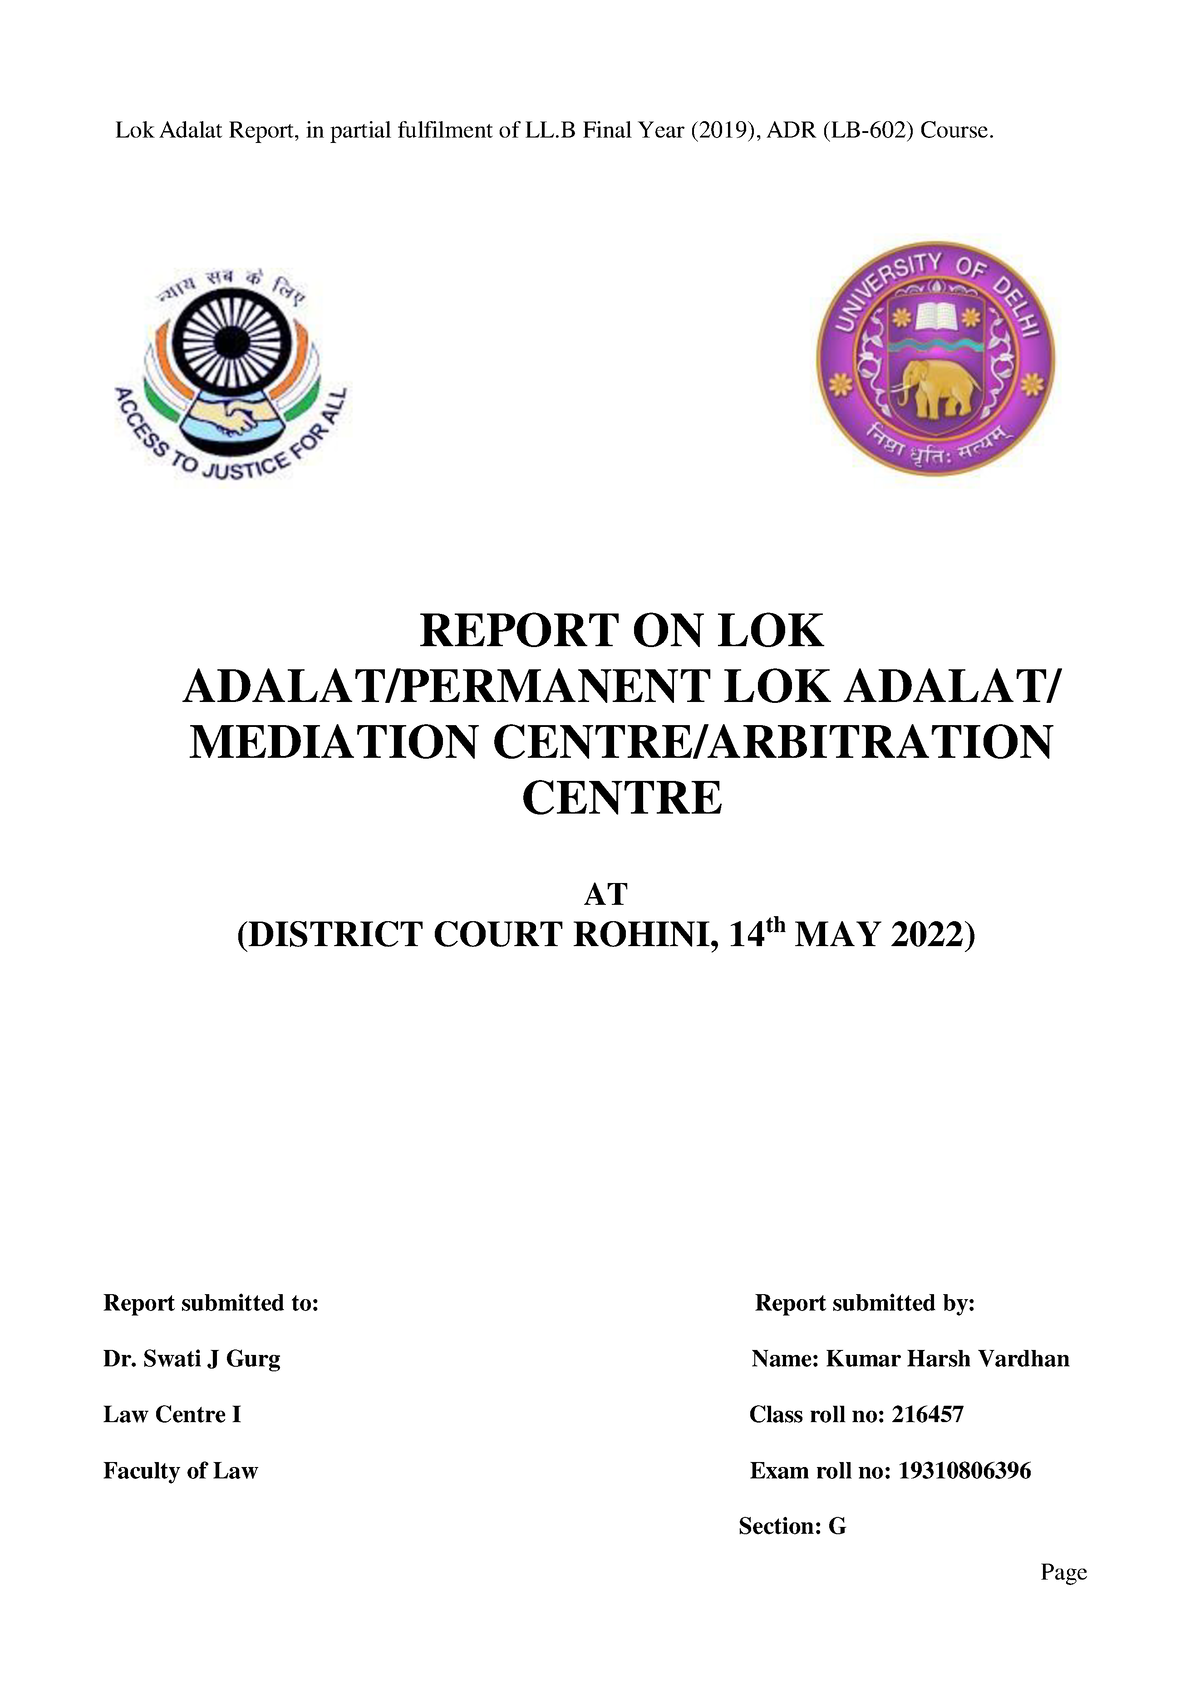 report on lok adalat visit